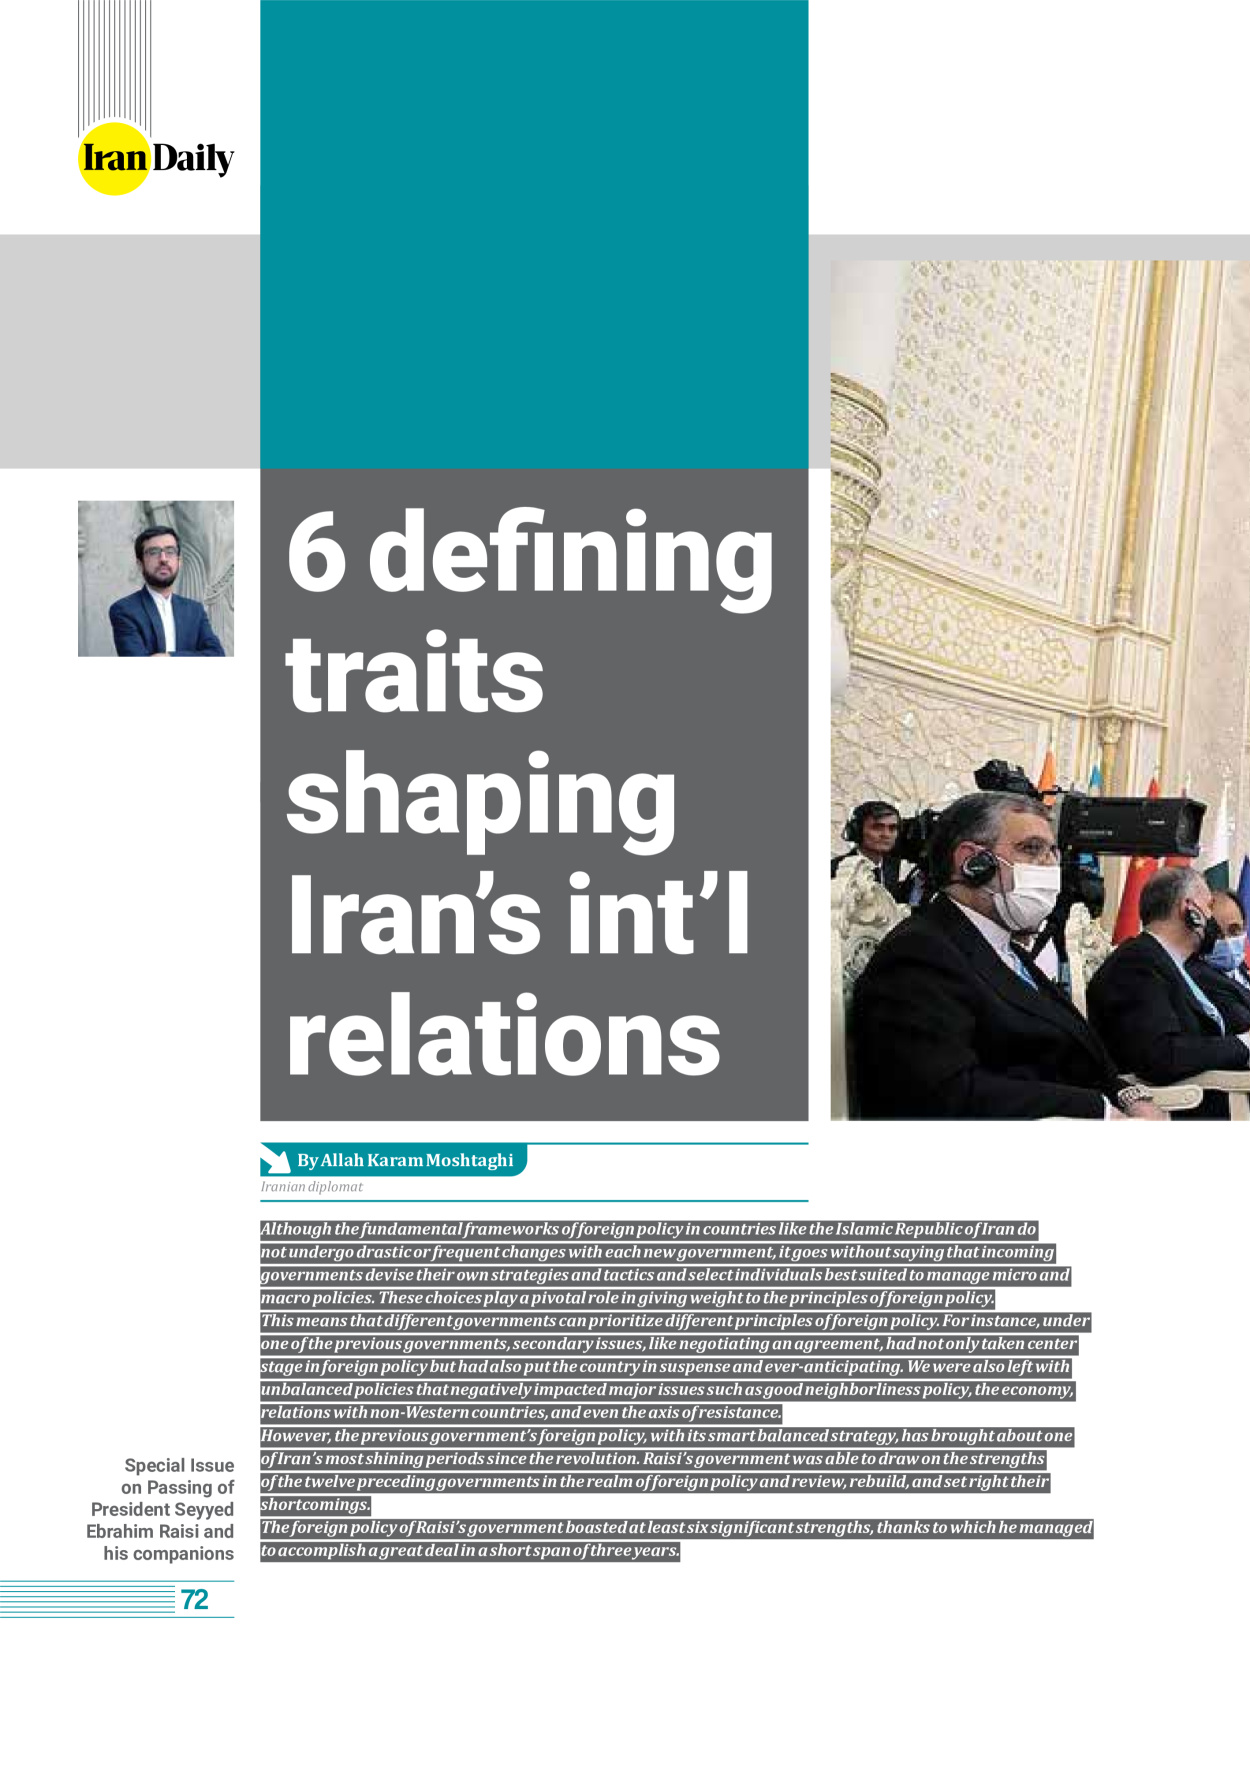 روزنامه ایران - ویژه نامه وِزه نامه چهلم شهید رییسی( انگلیسی) - ۱۷ تیر ۱۴۰۳ - صفحه ۷۲